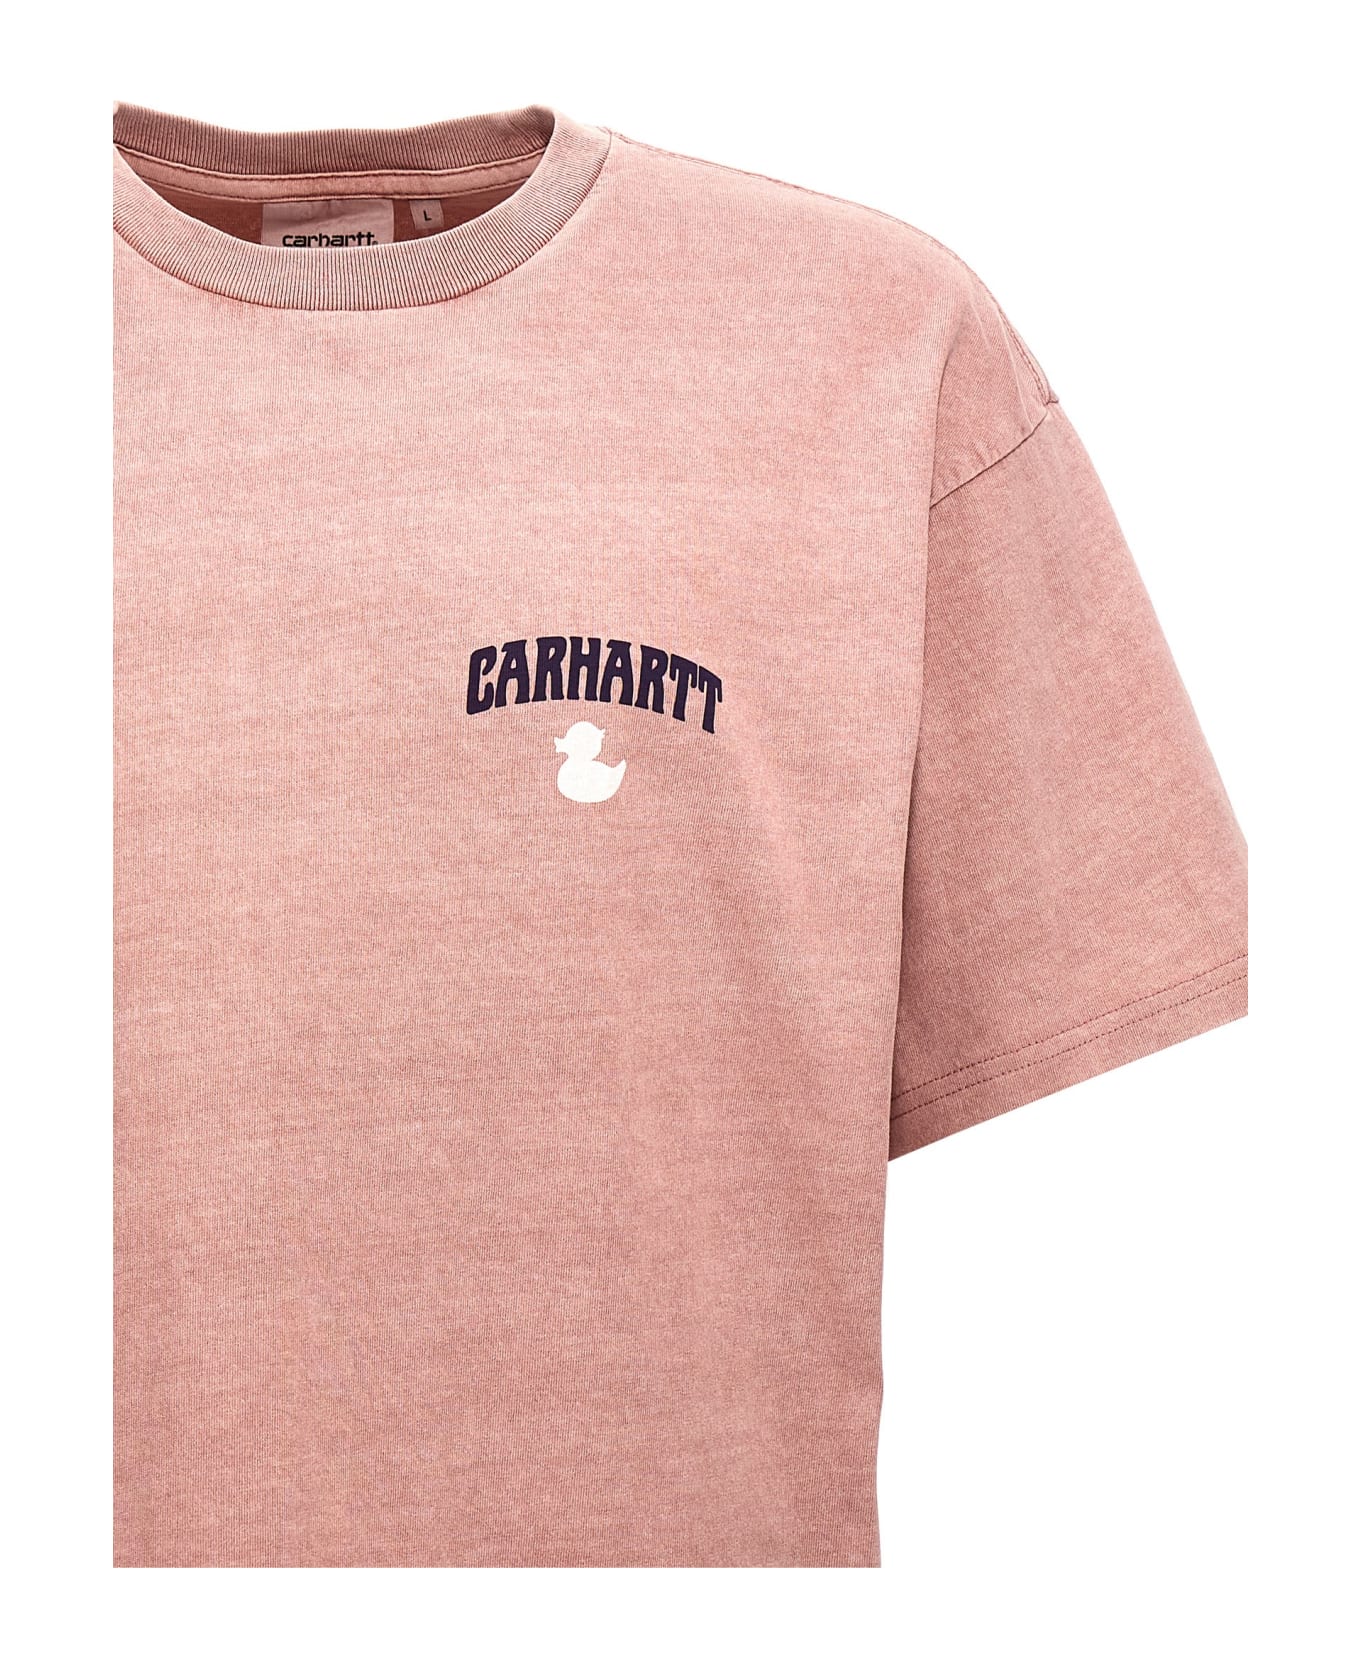 Carhartt WIP 'duckin' T-shirt - Pink